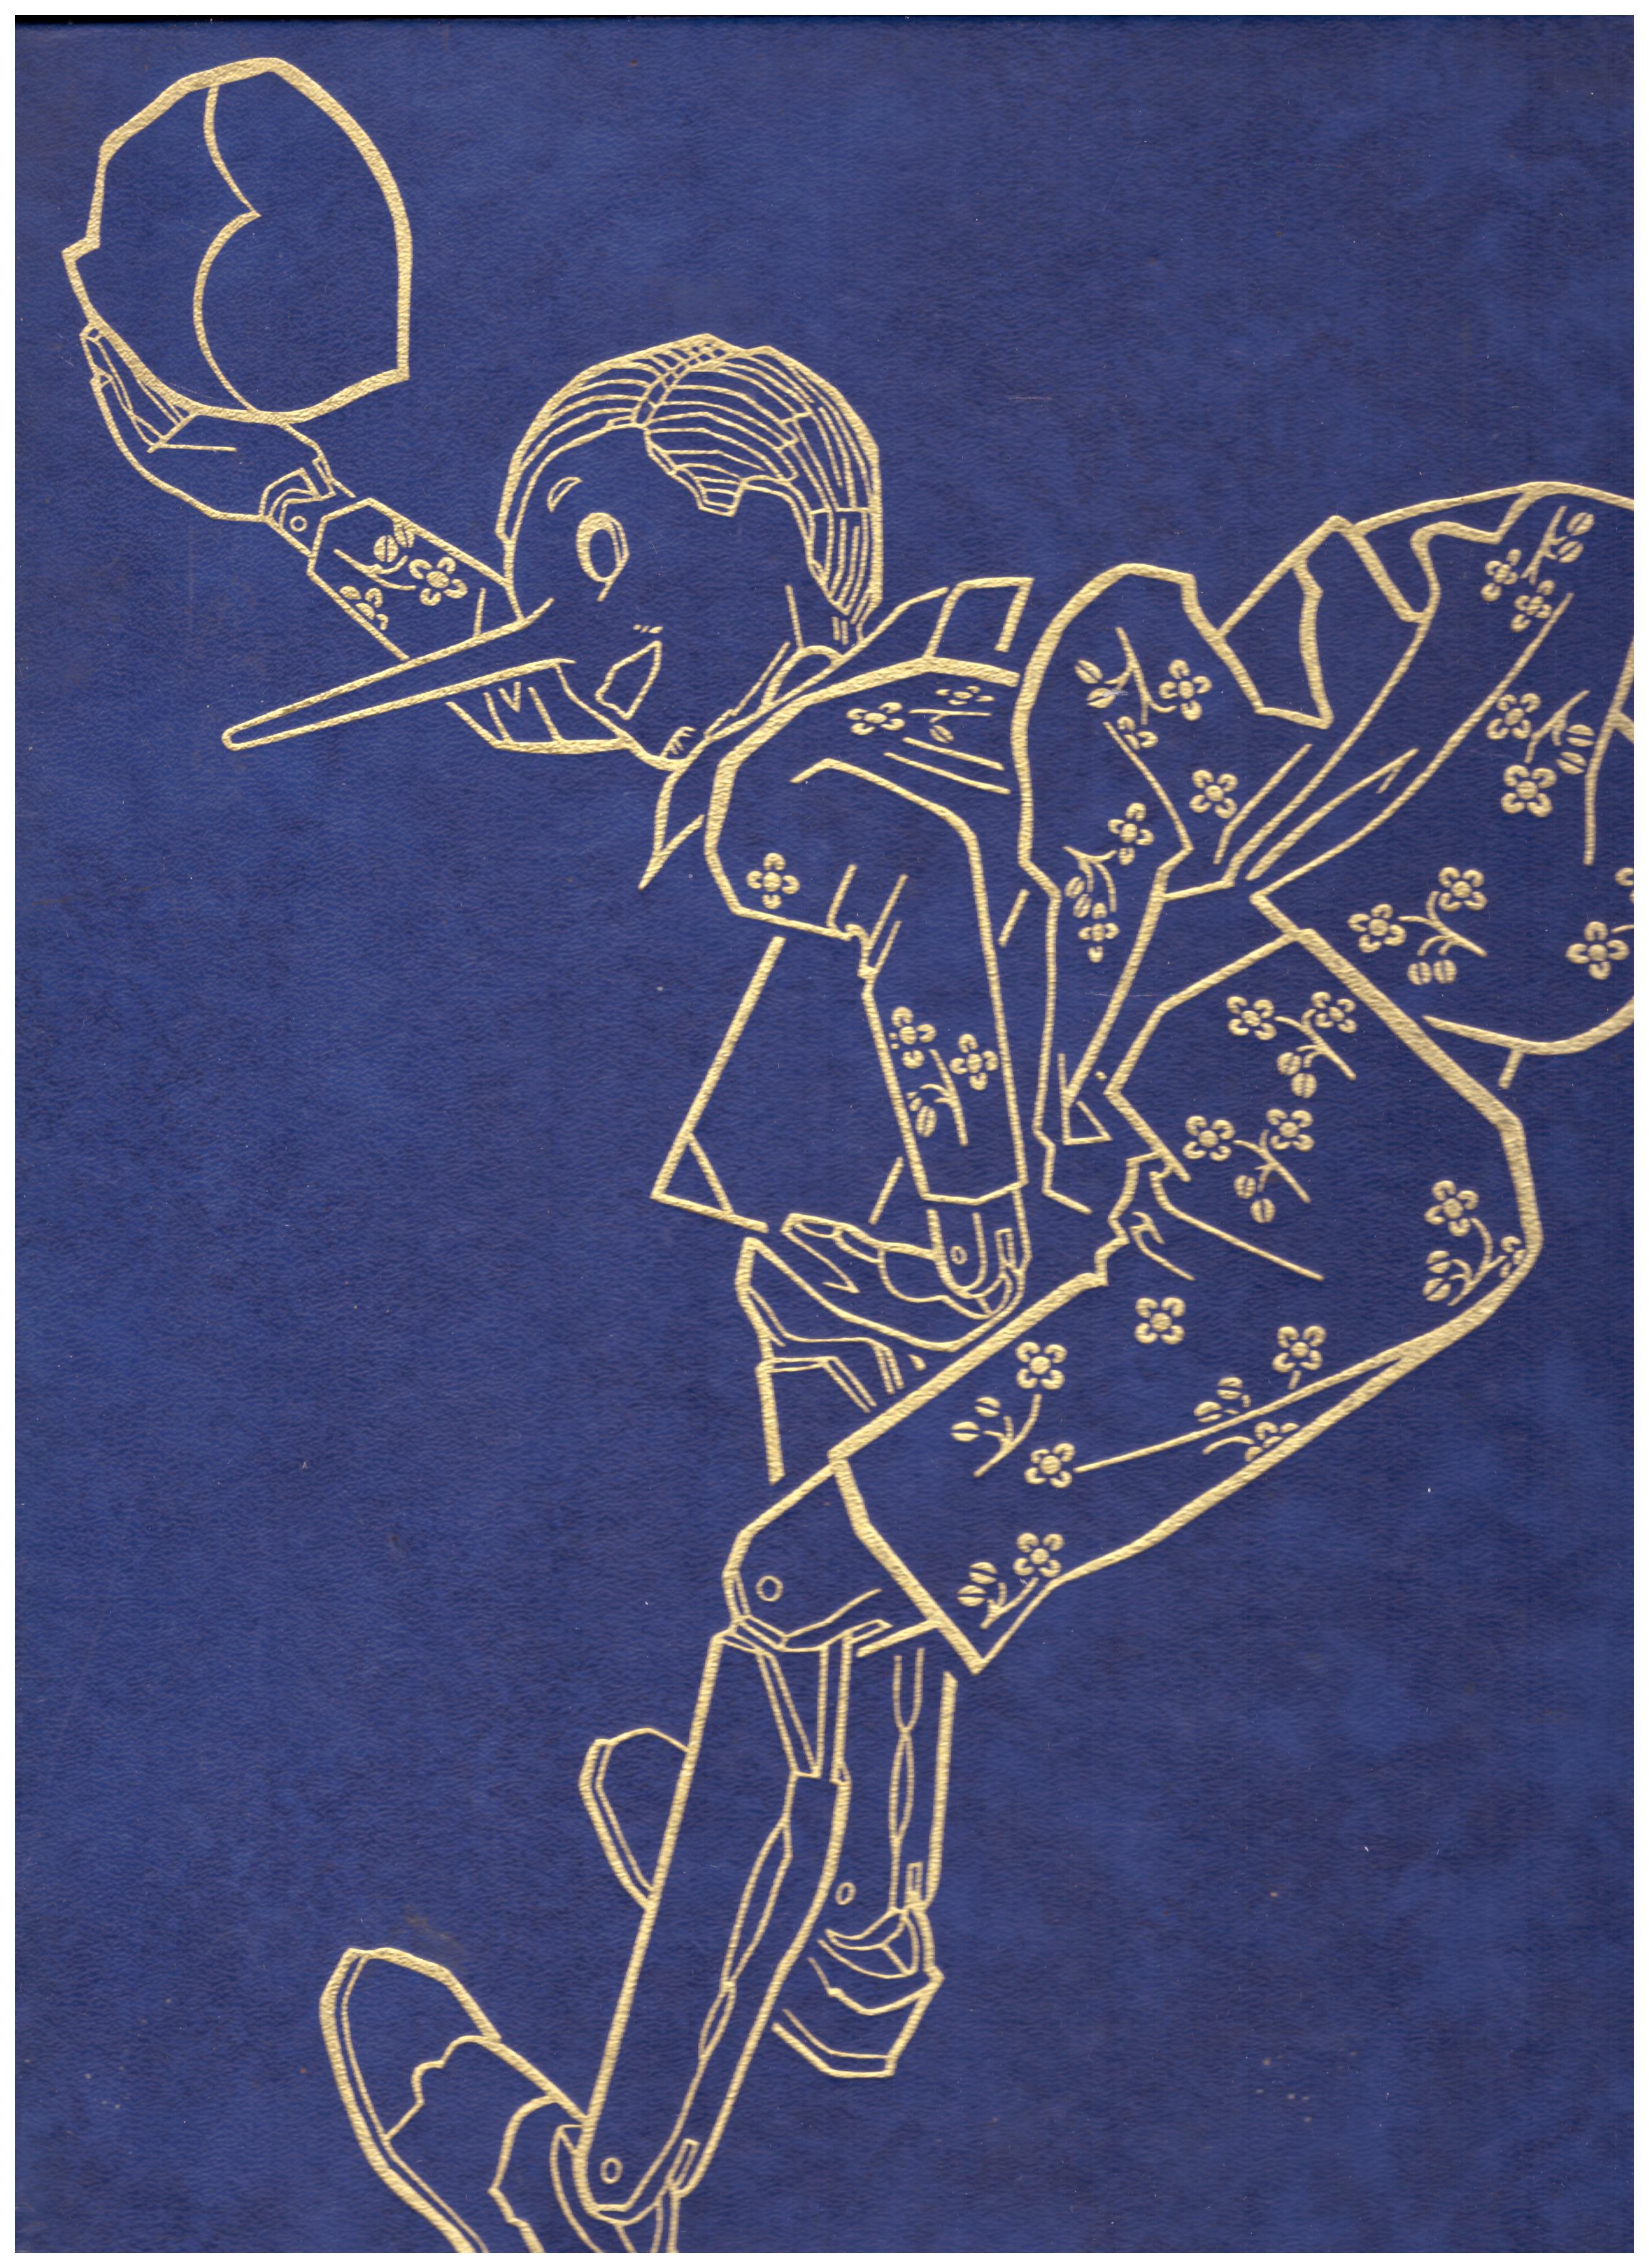 Titolo: Le avventure di Pinocchio Autore: Carlo Collodi Editore: Fabbri editori, 1965